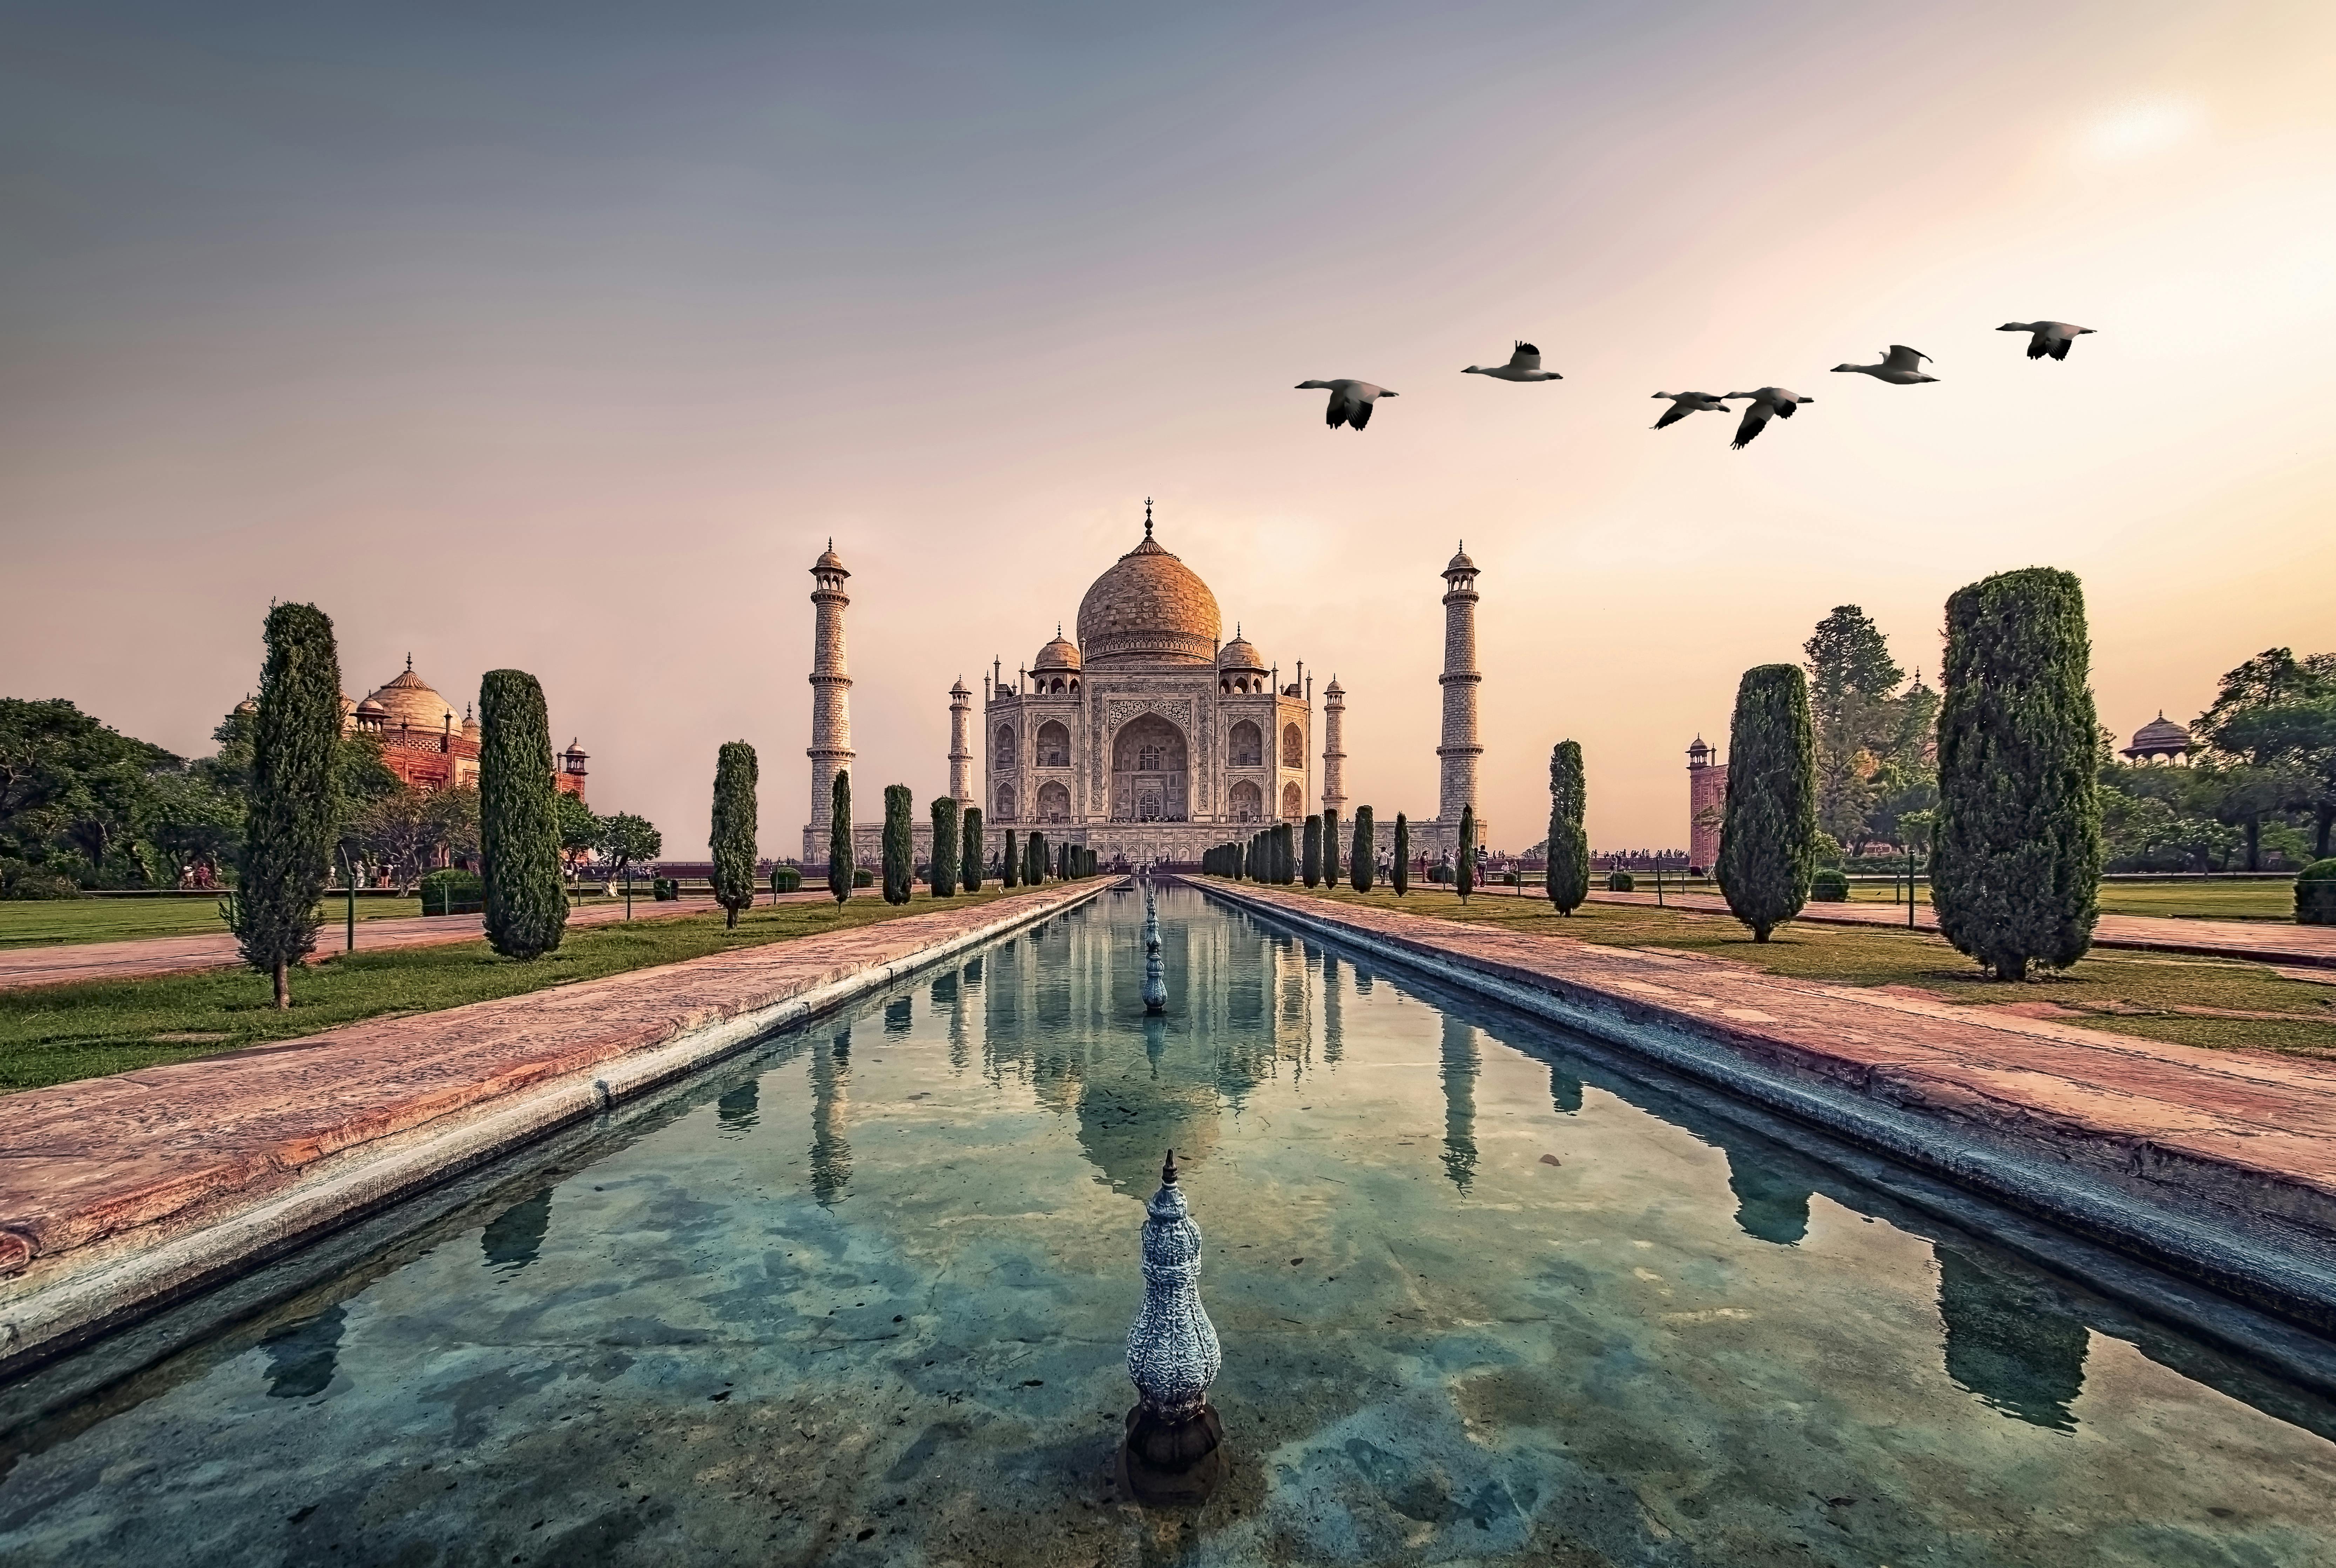 Private Tagestour zum Taj Mahal und zum Agra Fort mit dem Zug ab Delhi